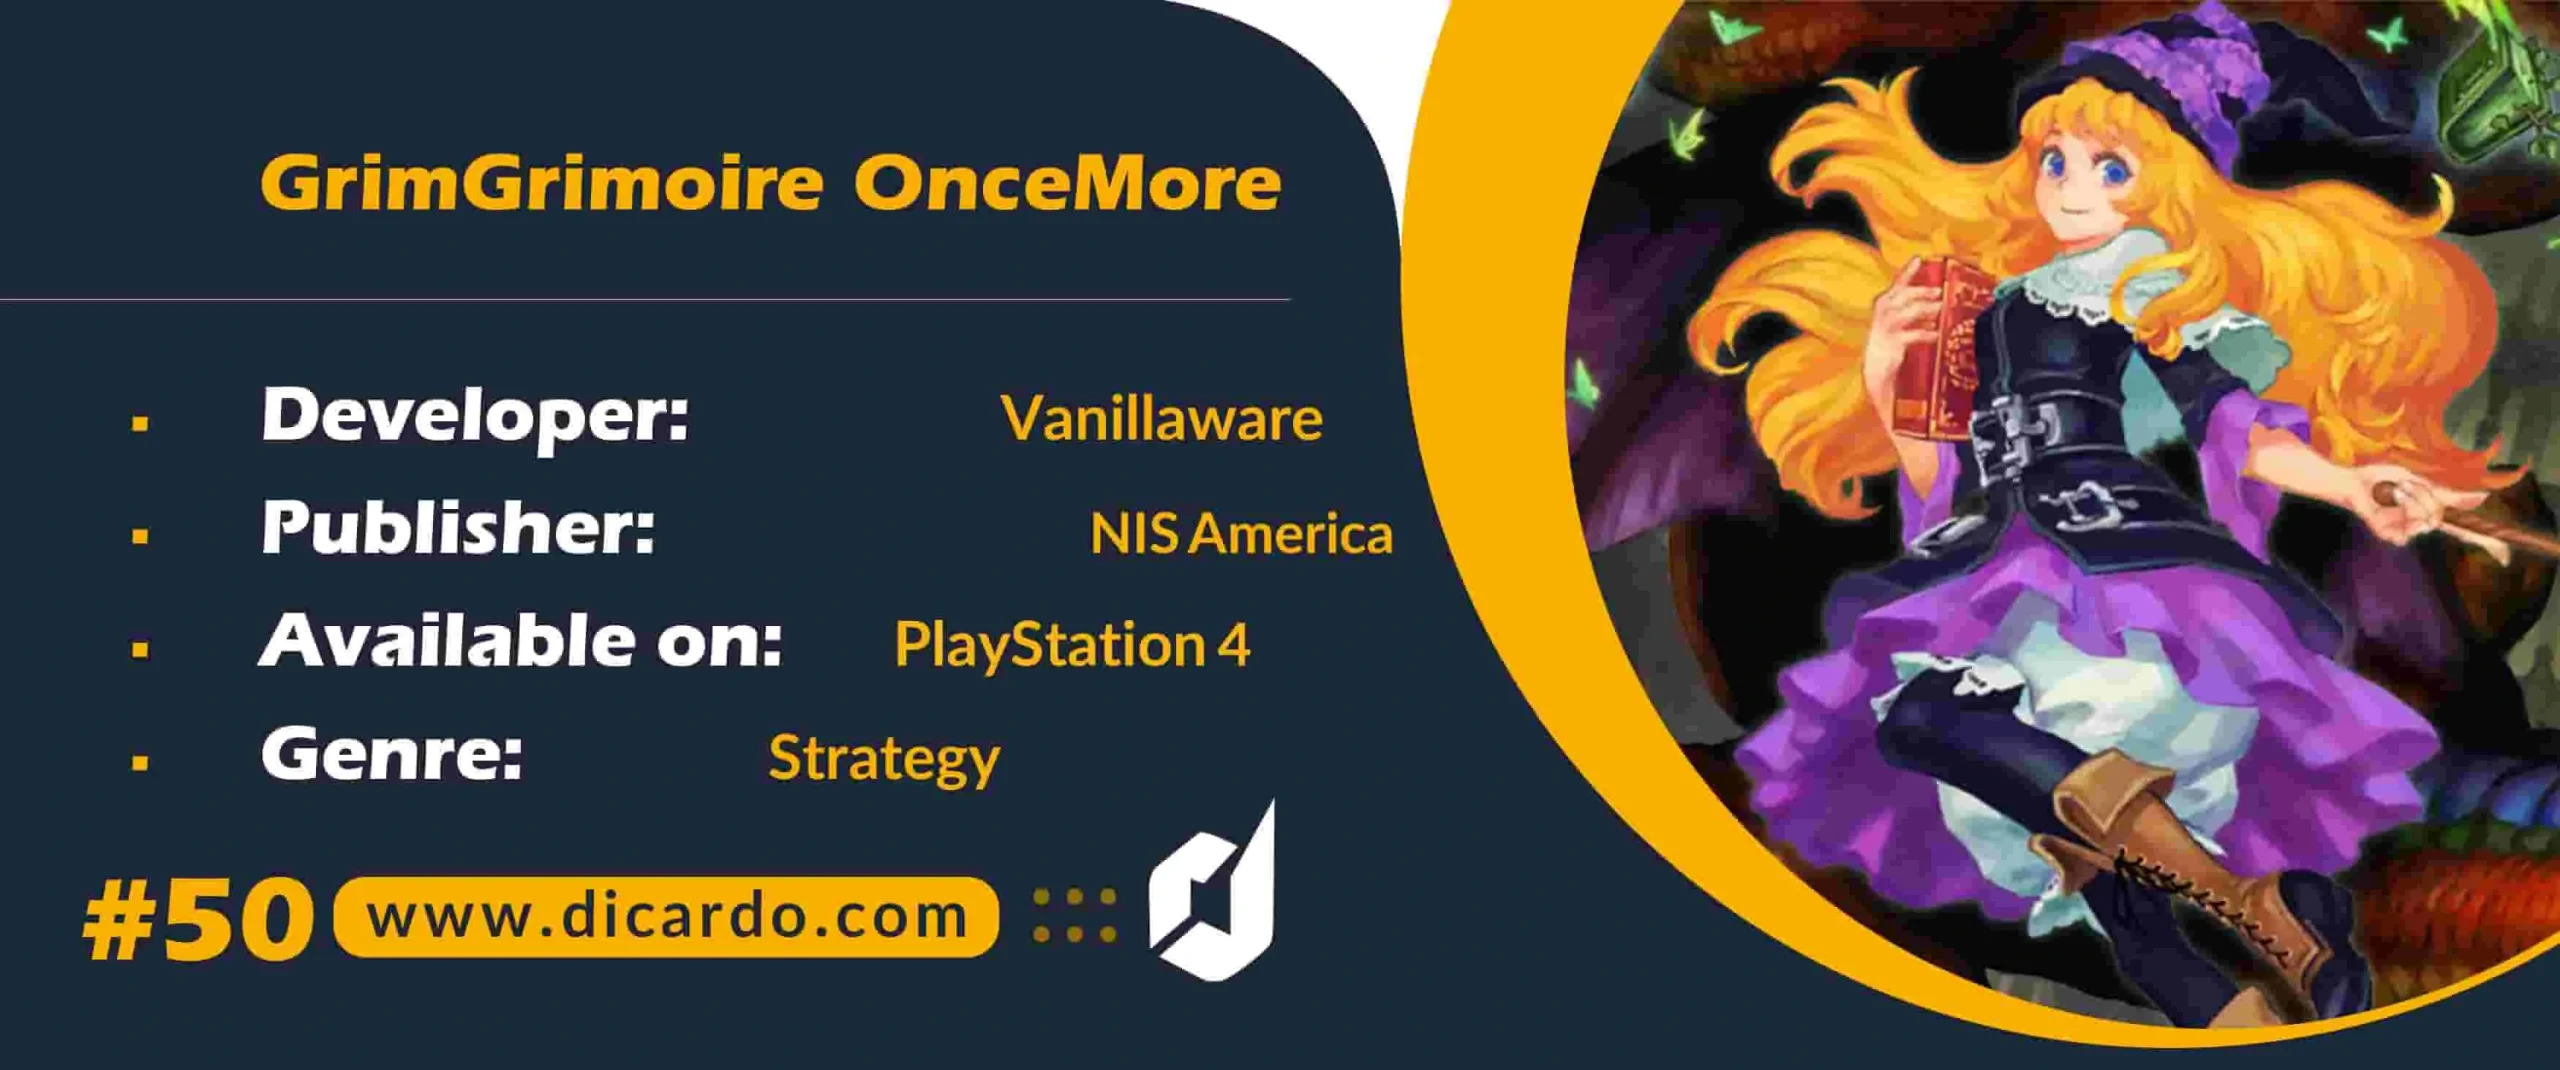 #50 گریم گریمویر وانس مور GrimGrimoire OnceMore مورد آخر از بازیهای PS4 سال 2023